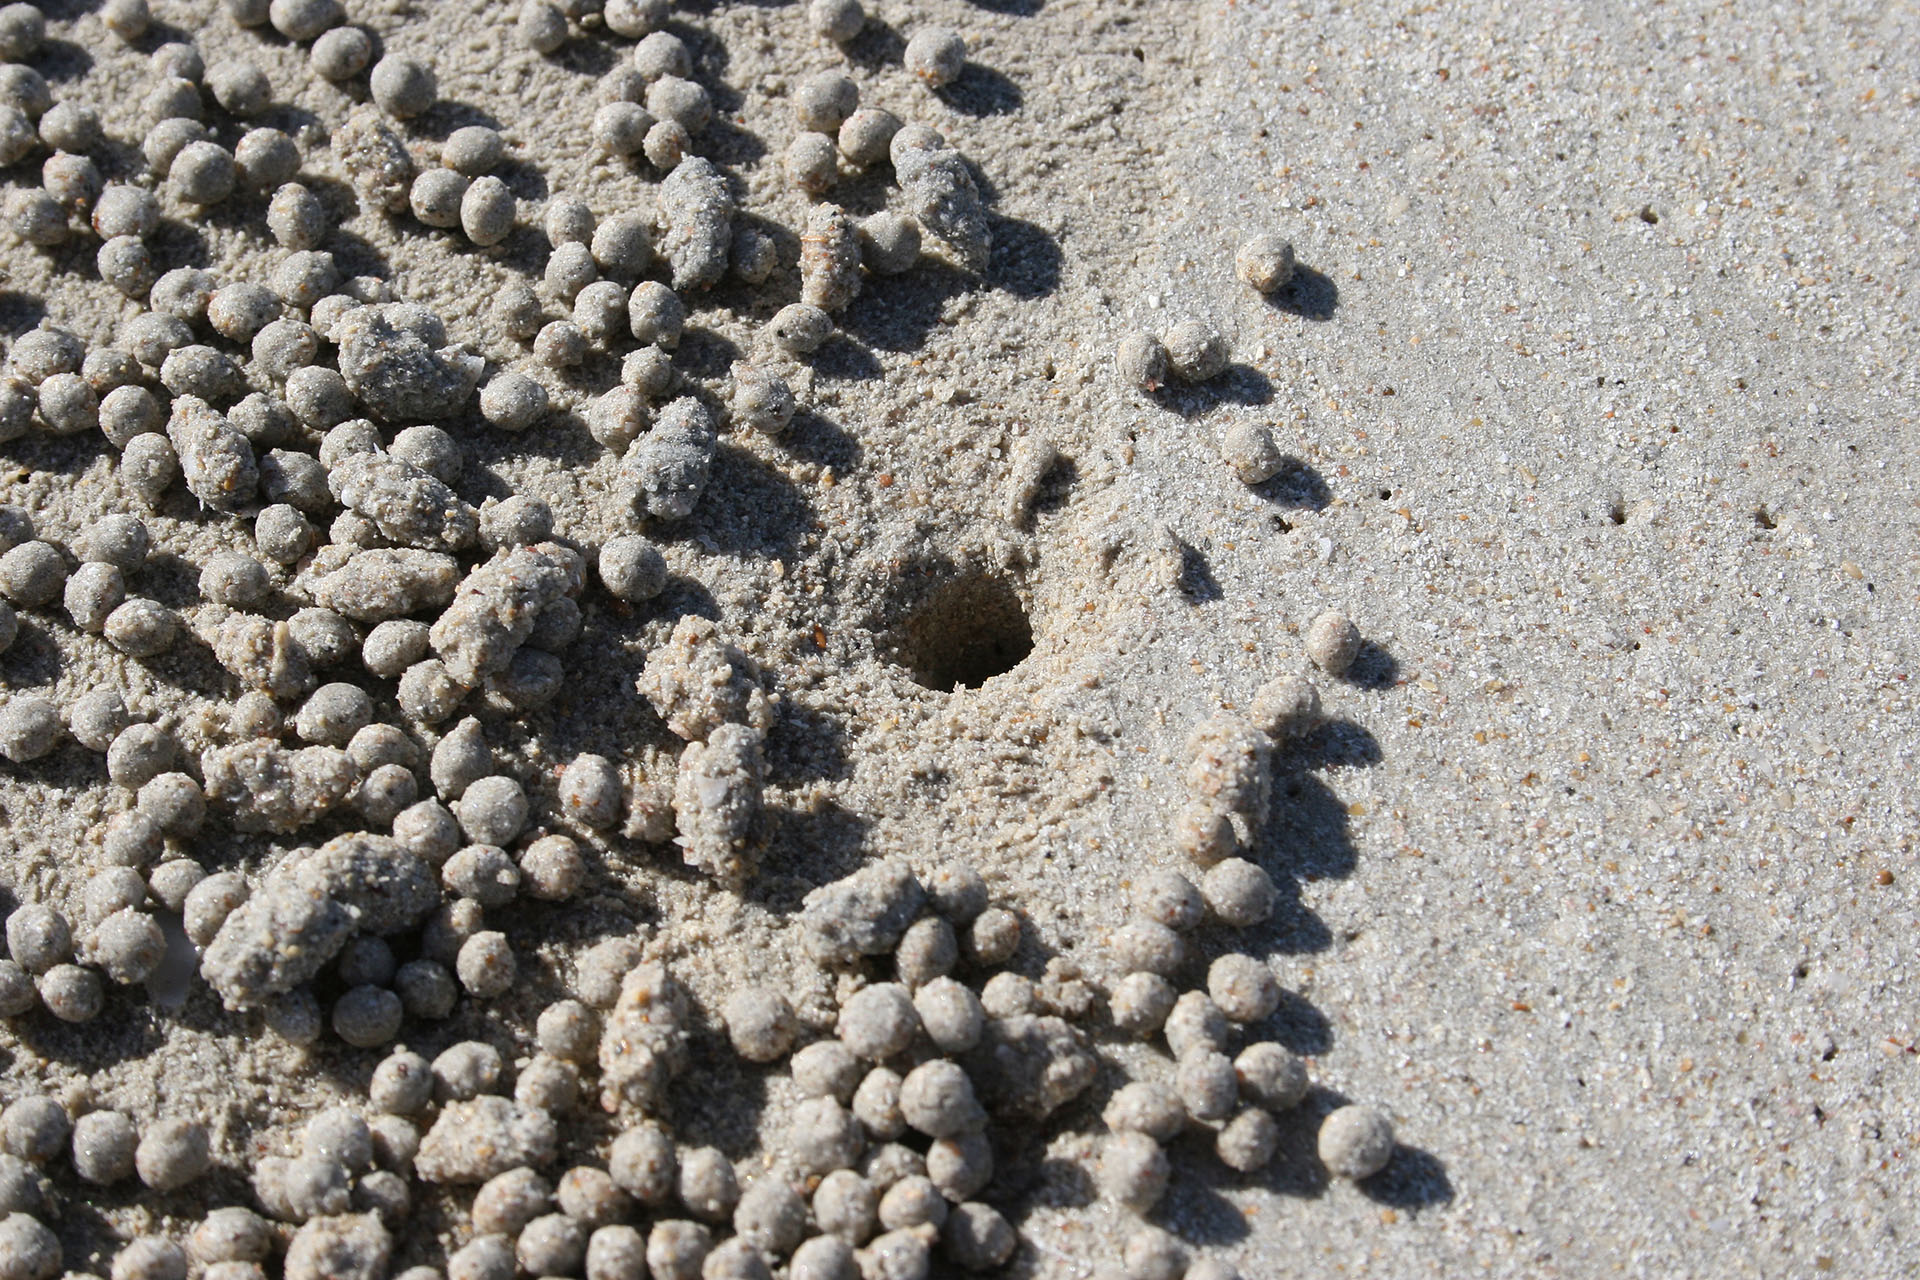 Нора микроскопического краба. Песочные шарики — остатки его обеда.